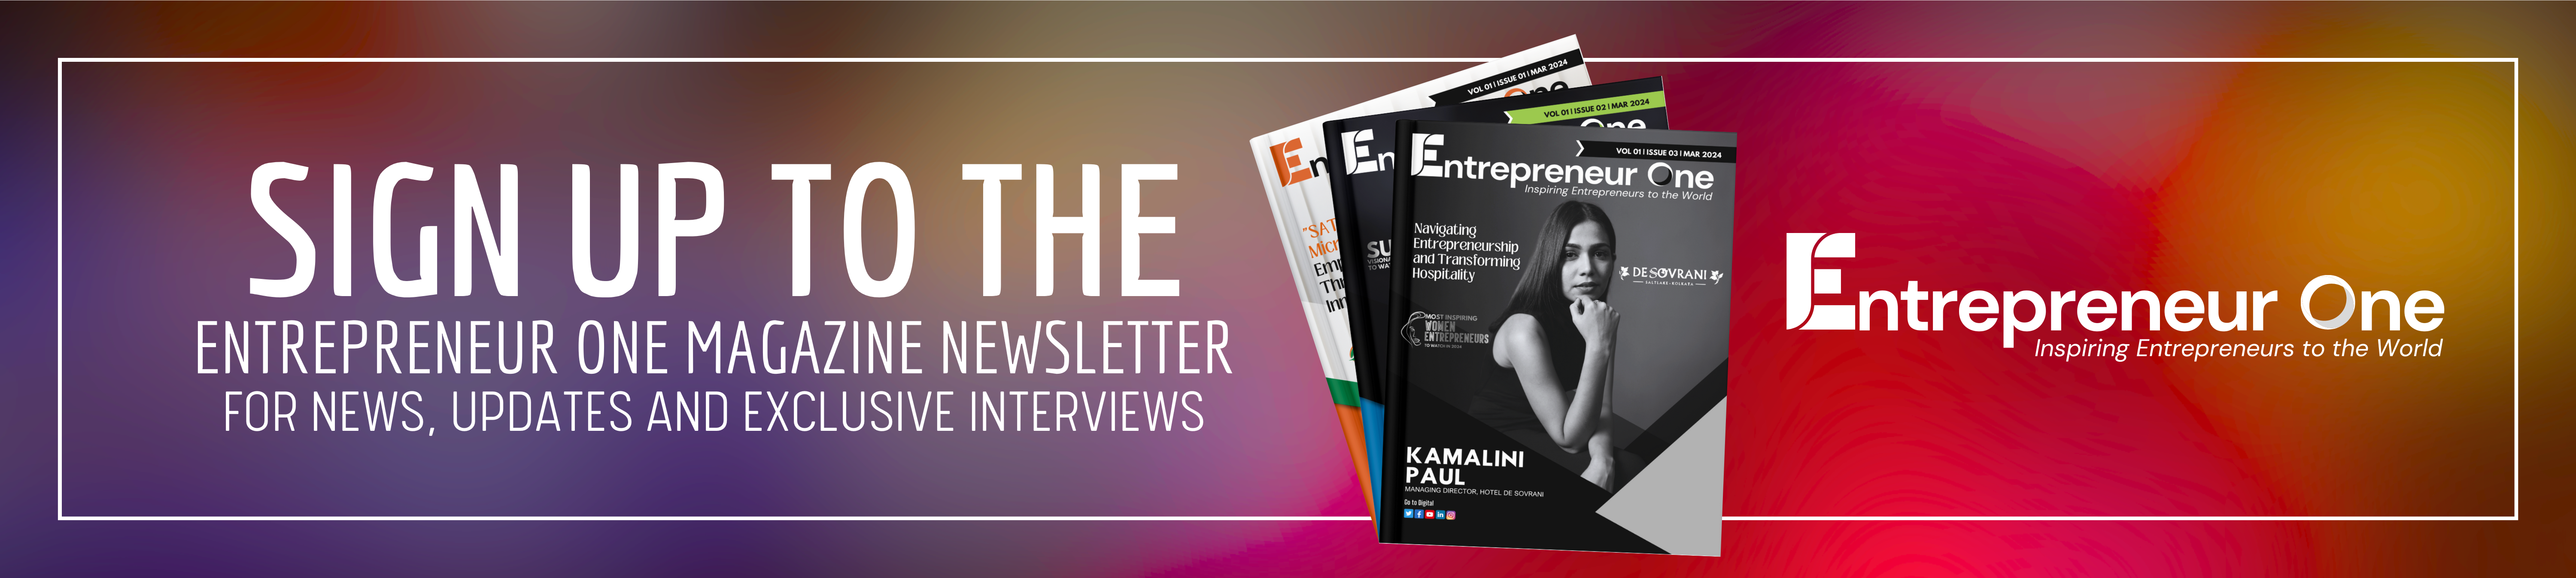 Entrepreneur One media magazine sign up newsletter